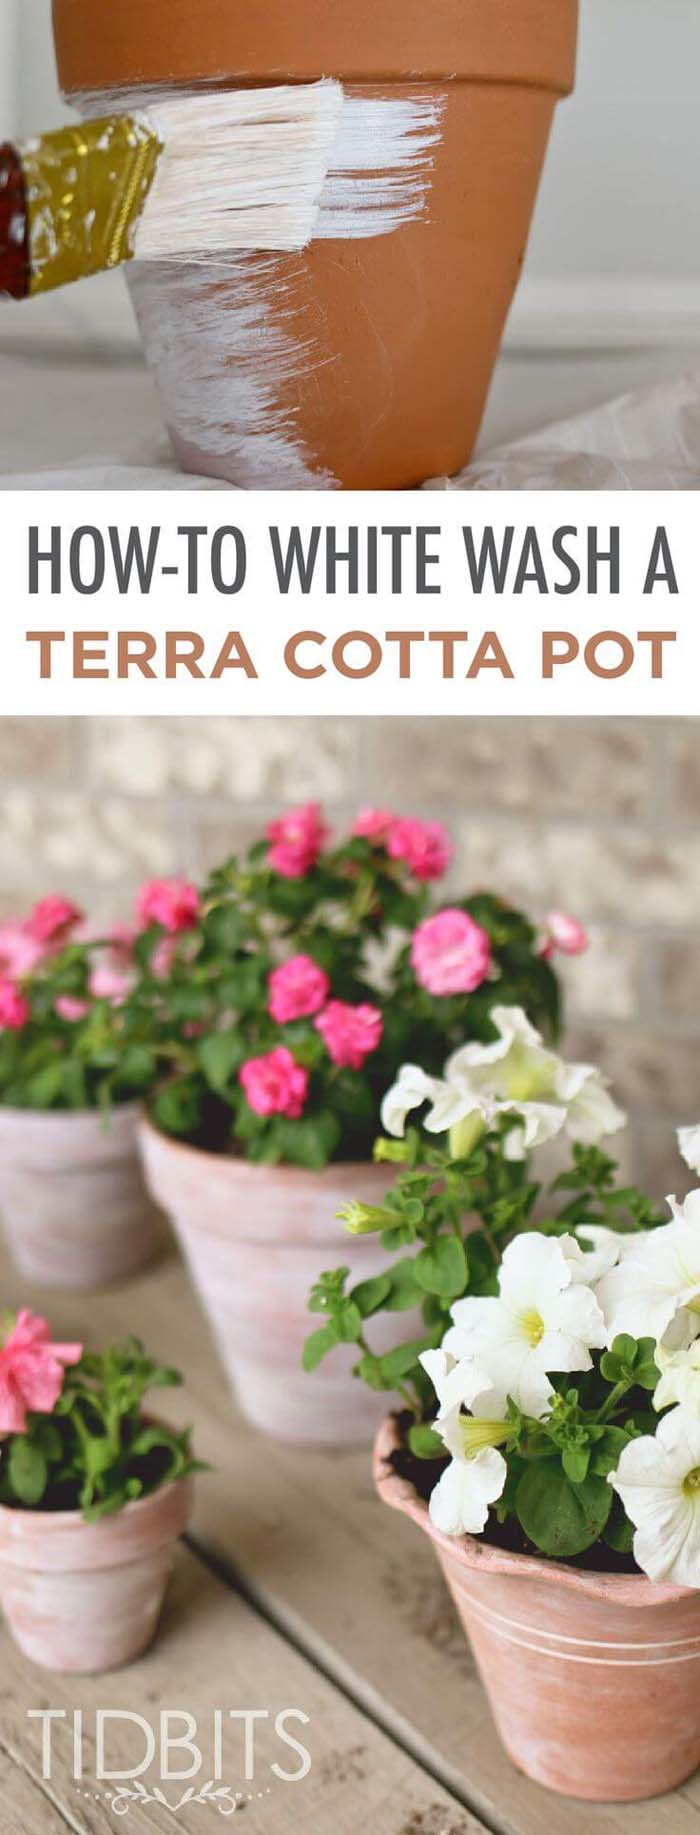 DIY Flower Pots with Whitewashed Finish #diy #flowerpot #garden #flower #decorhomeideas